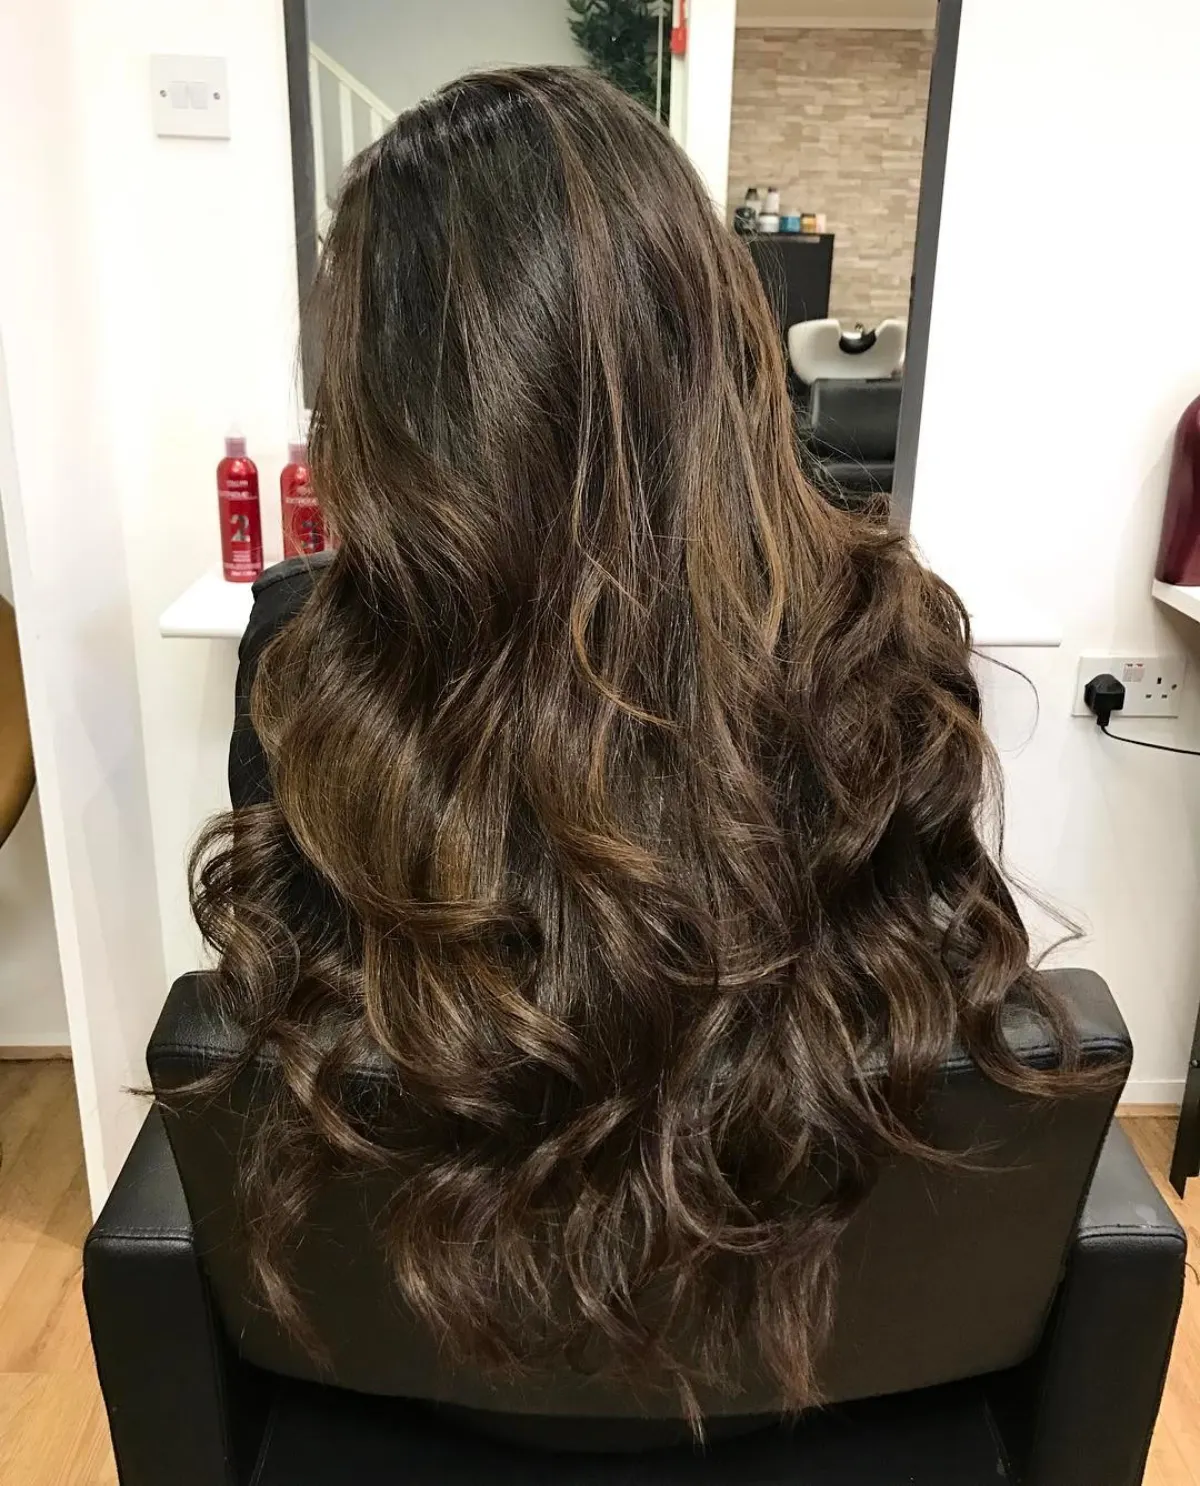 cheveux longs salon coloration tendance automne caramel lowlights sur base noire